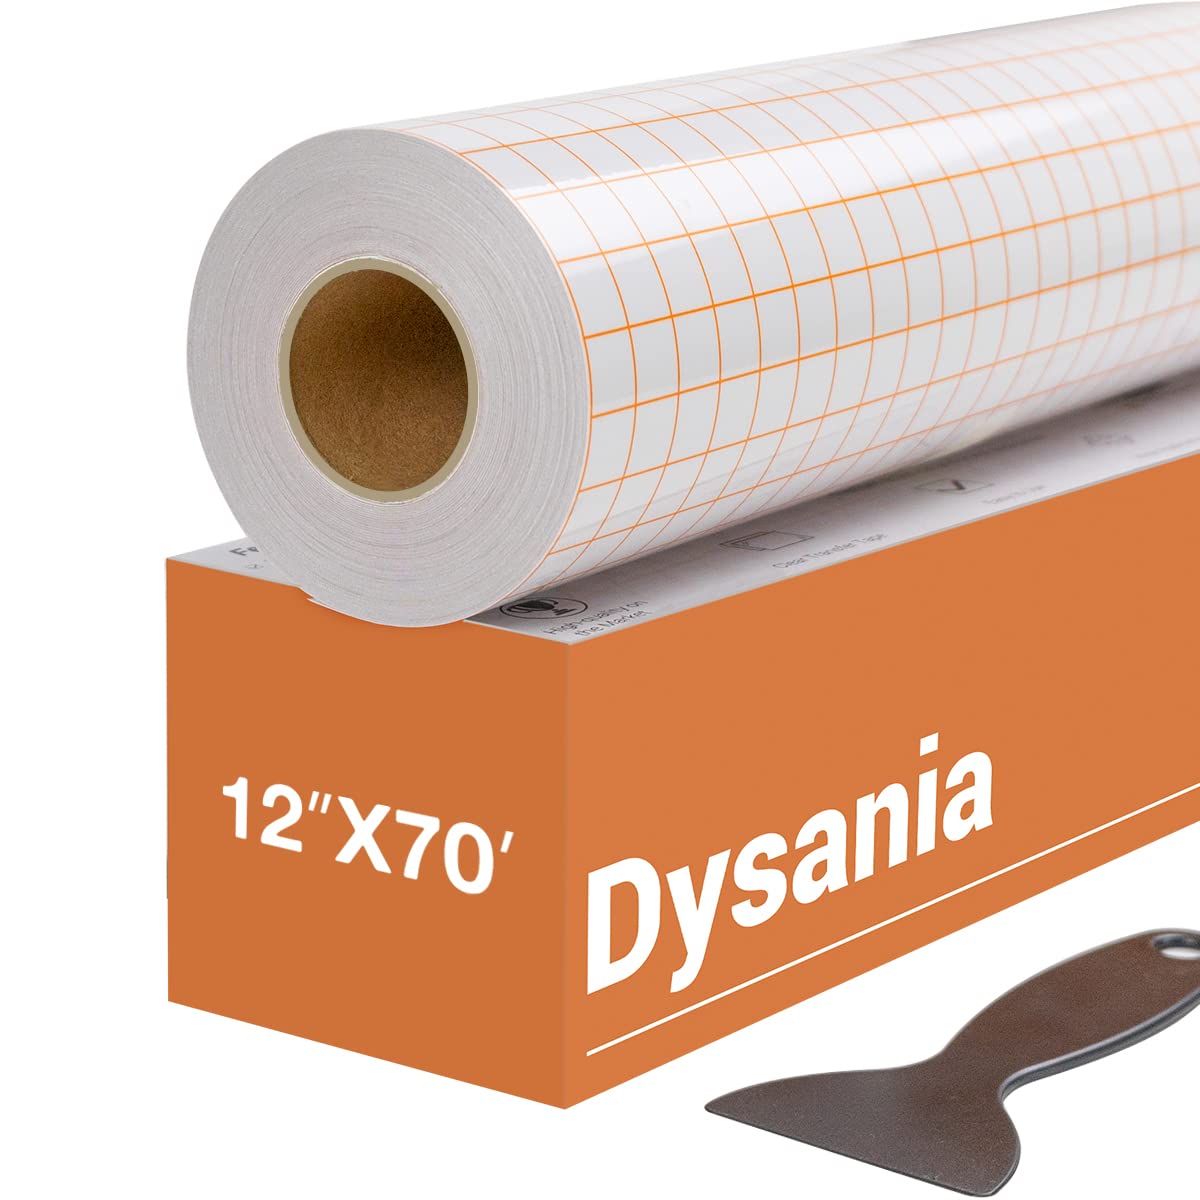 Dysania Transfer Tape for Vinyl - 12 x 70 FT w/Orange Alignment Grid for  Adhesive Vinyl?- Medium Tack Vinyl Transfer Tape for S